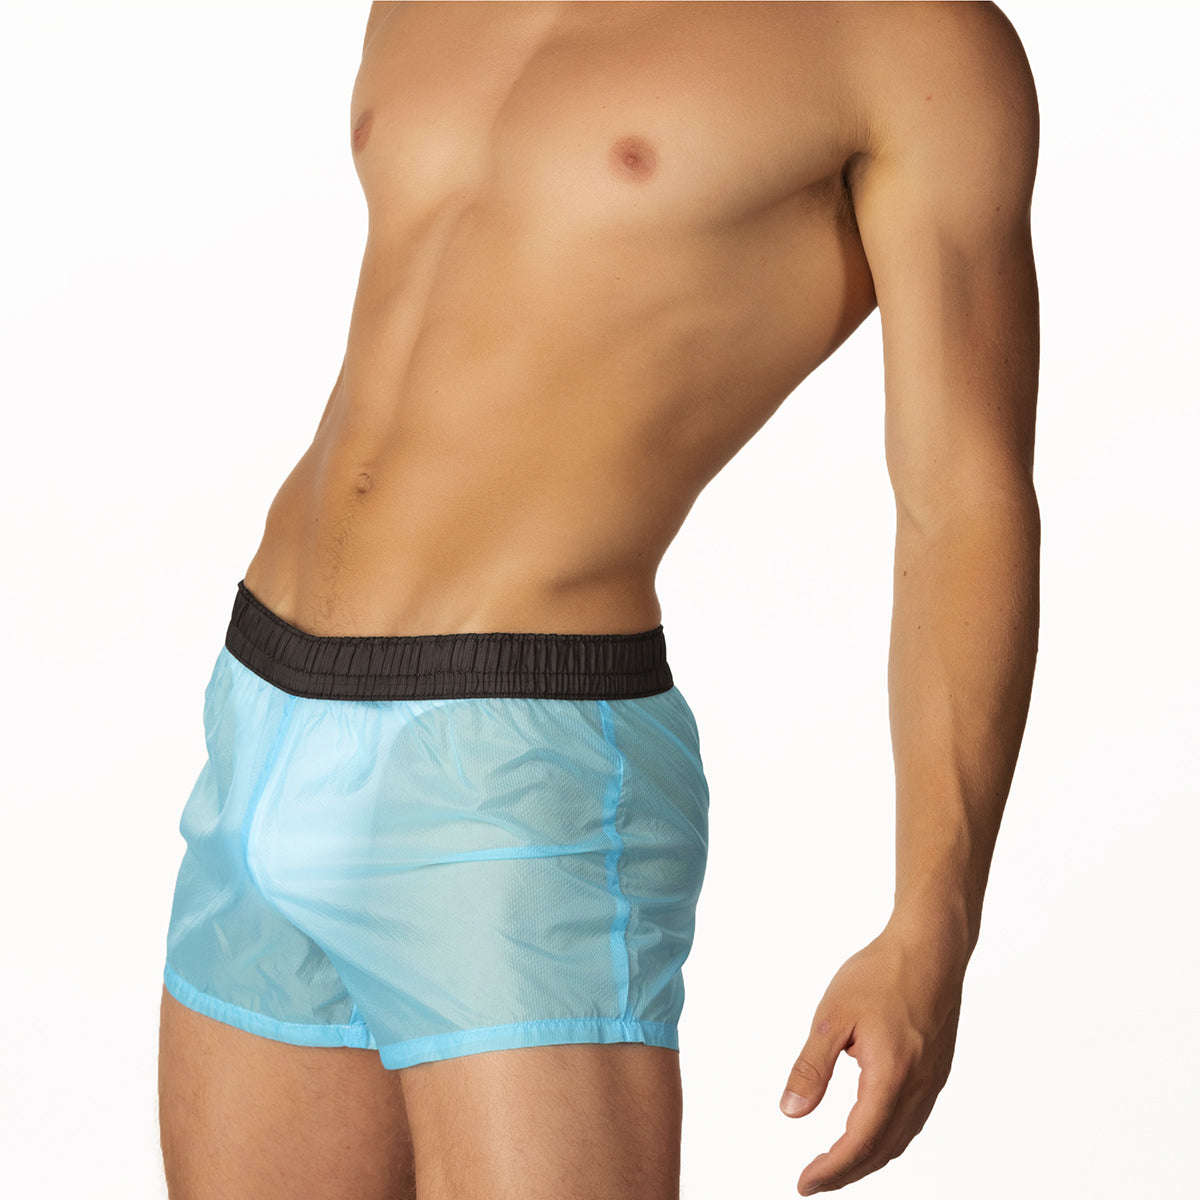 men's blue nylon shorts